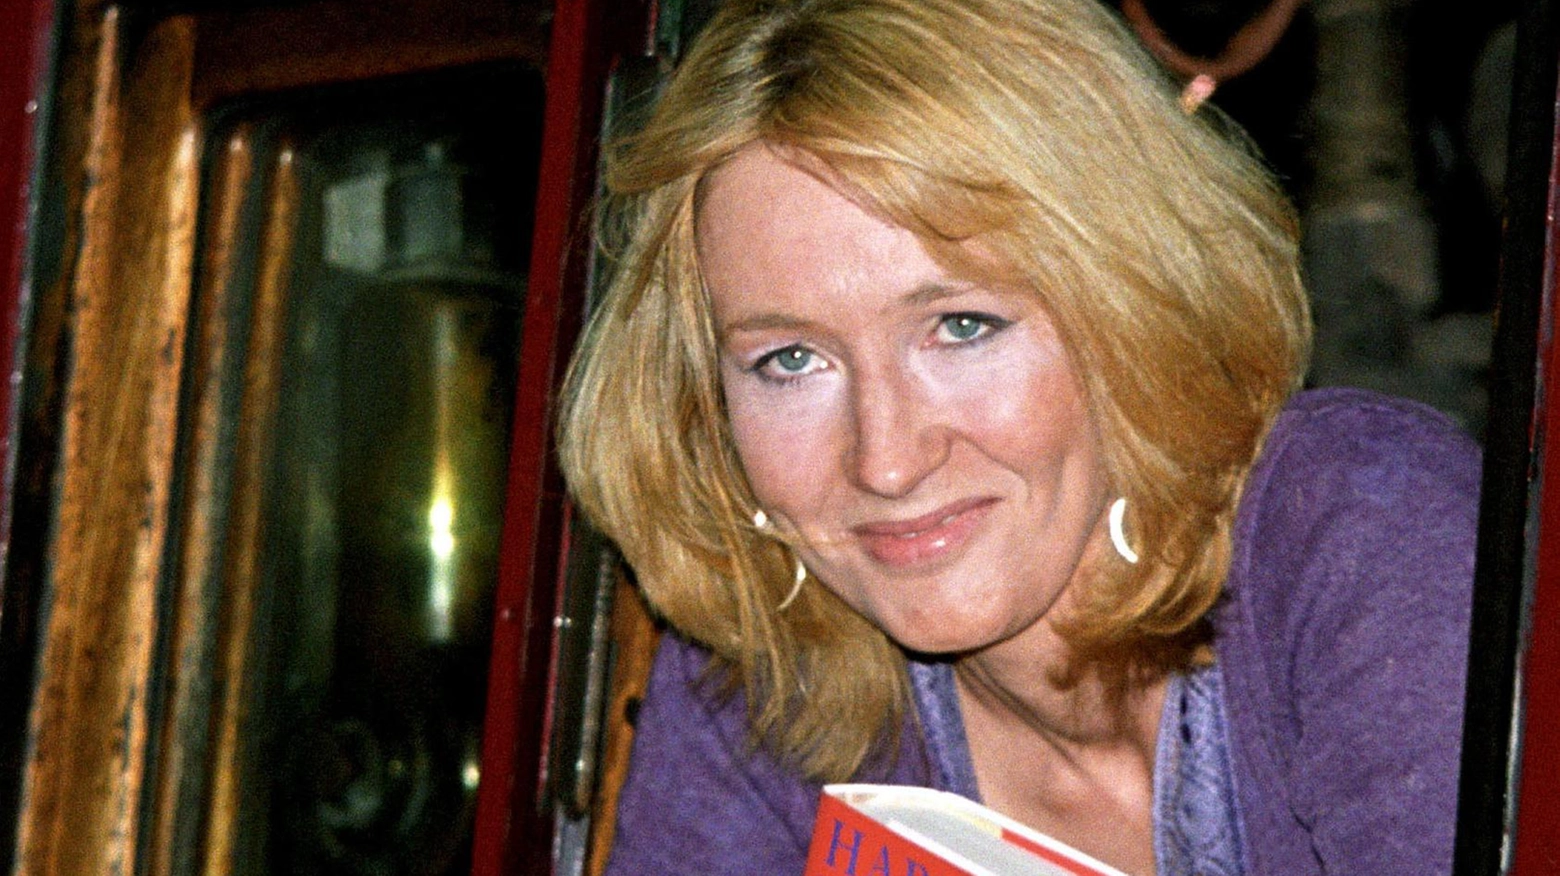 La scrittrice Joanne Rowling, 56 anni, autrice della saga di Harry Potter